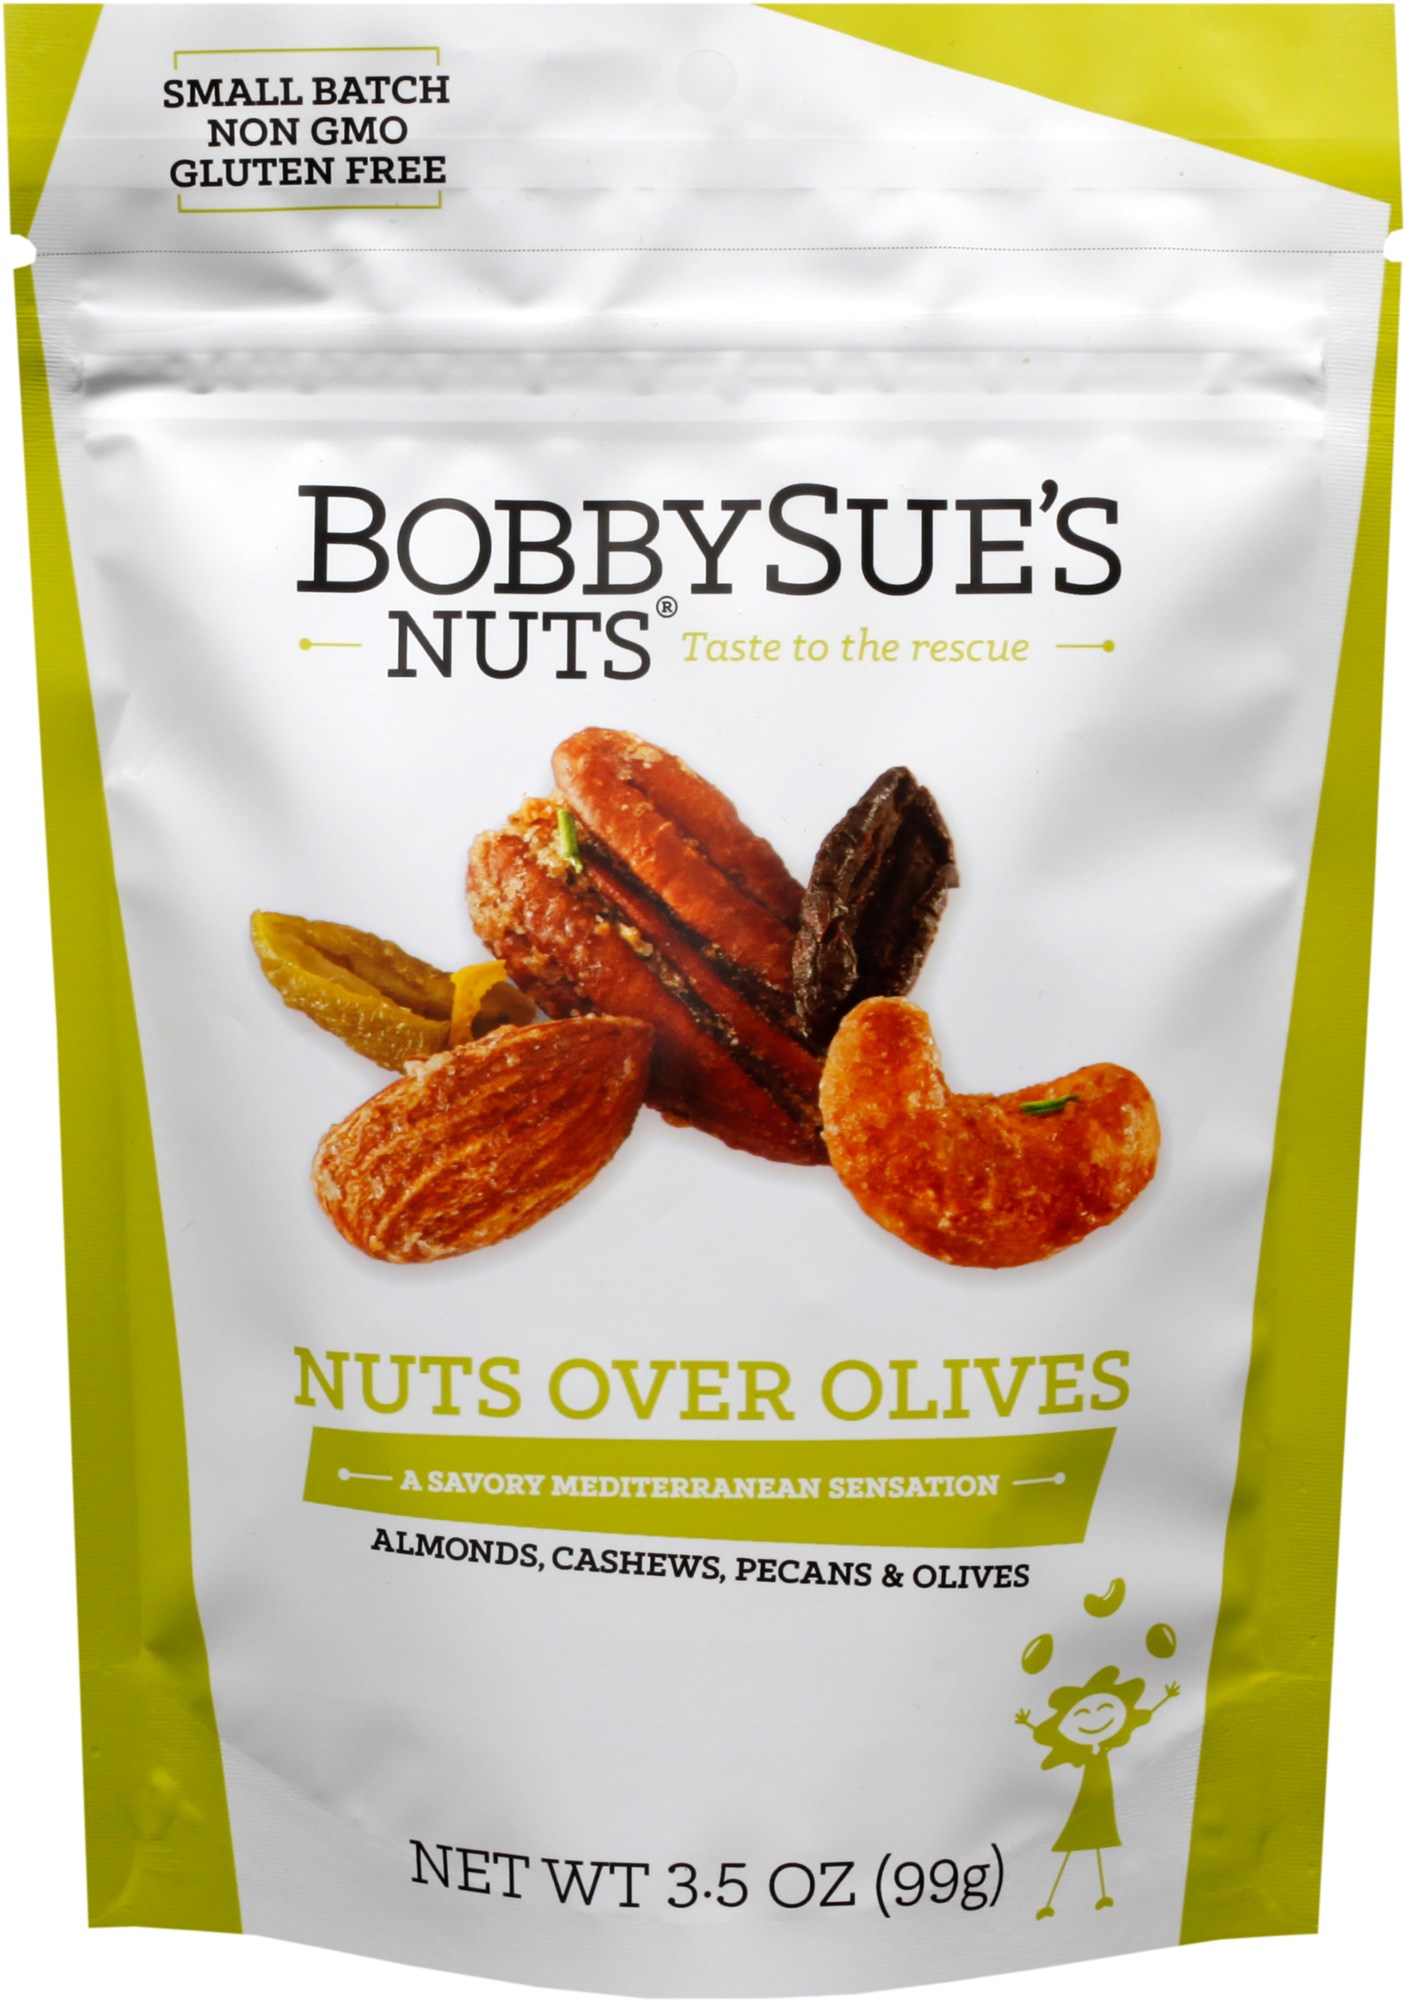 протеиновый батончик ореховый nuts миндаль пекан 12 шт х 40 г Мешочек со смешанными орехами - 3,5 унции. BobbySue's Nuts